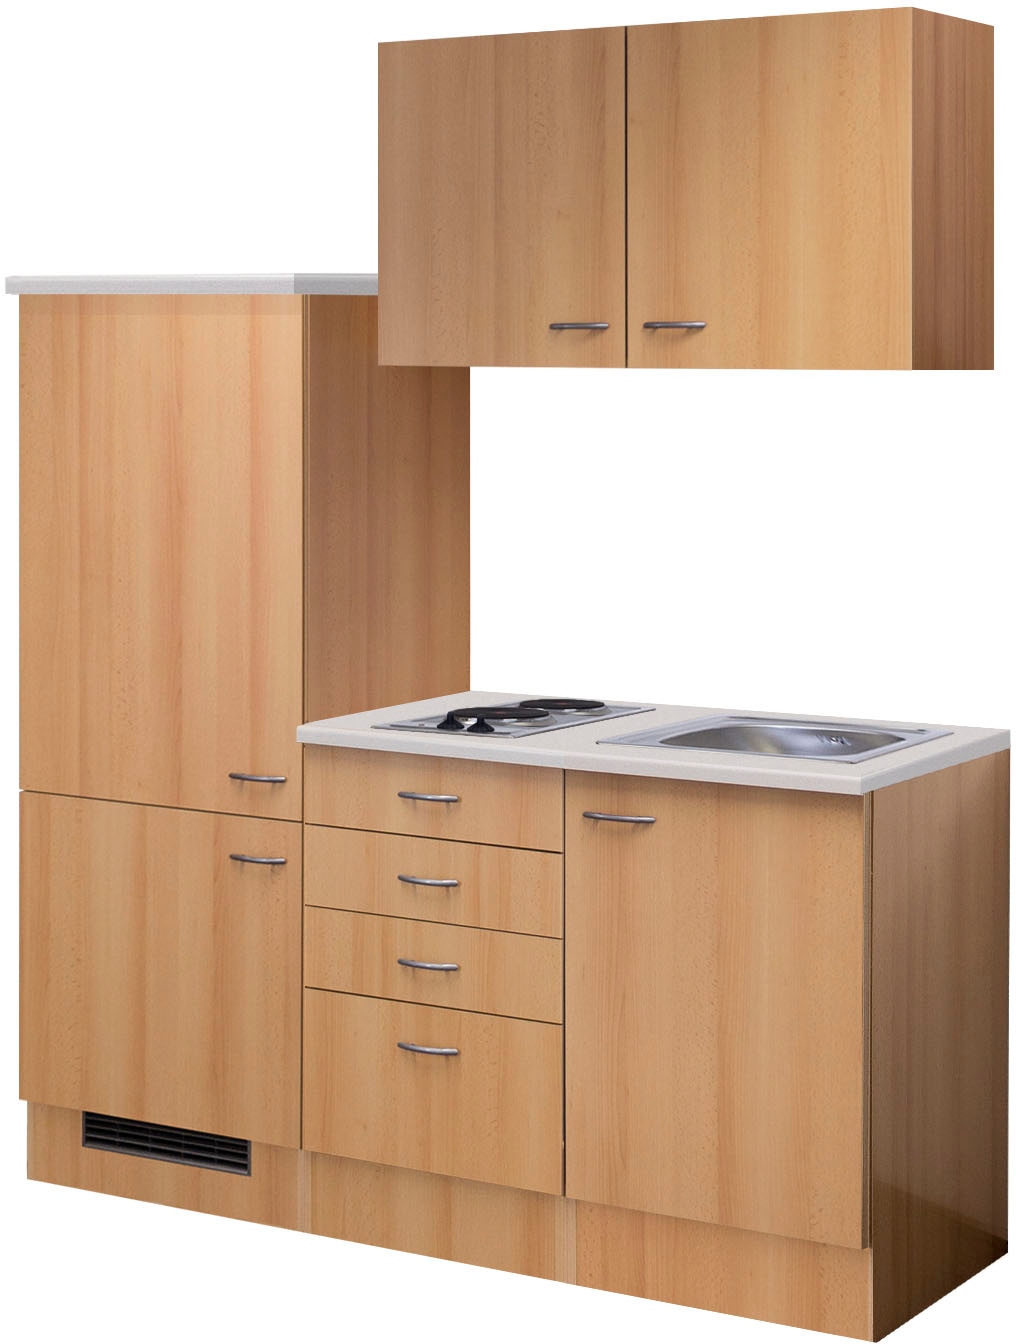 Flex-Well Küche "Nano", Gesamtbreite 160 cm, mit Einbau-Kühlschrank, Kochfeld und Spüle etc.